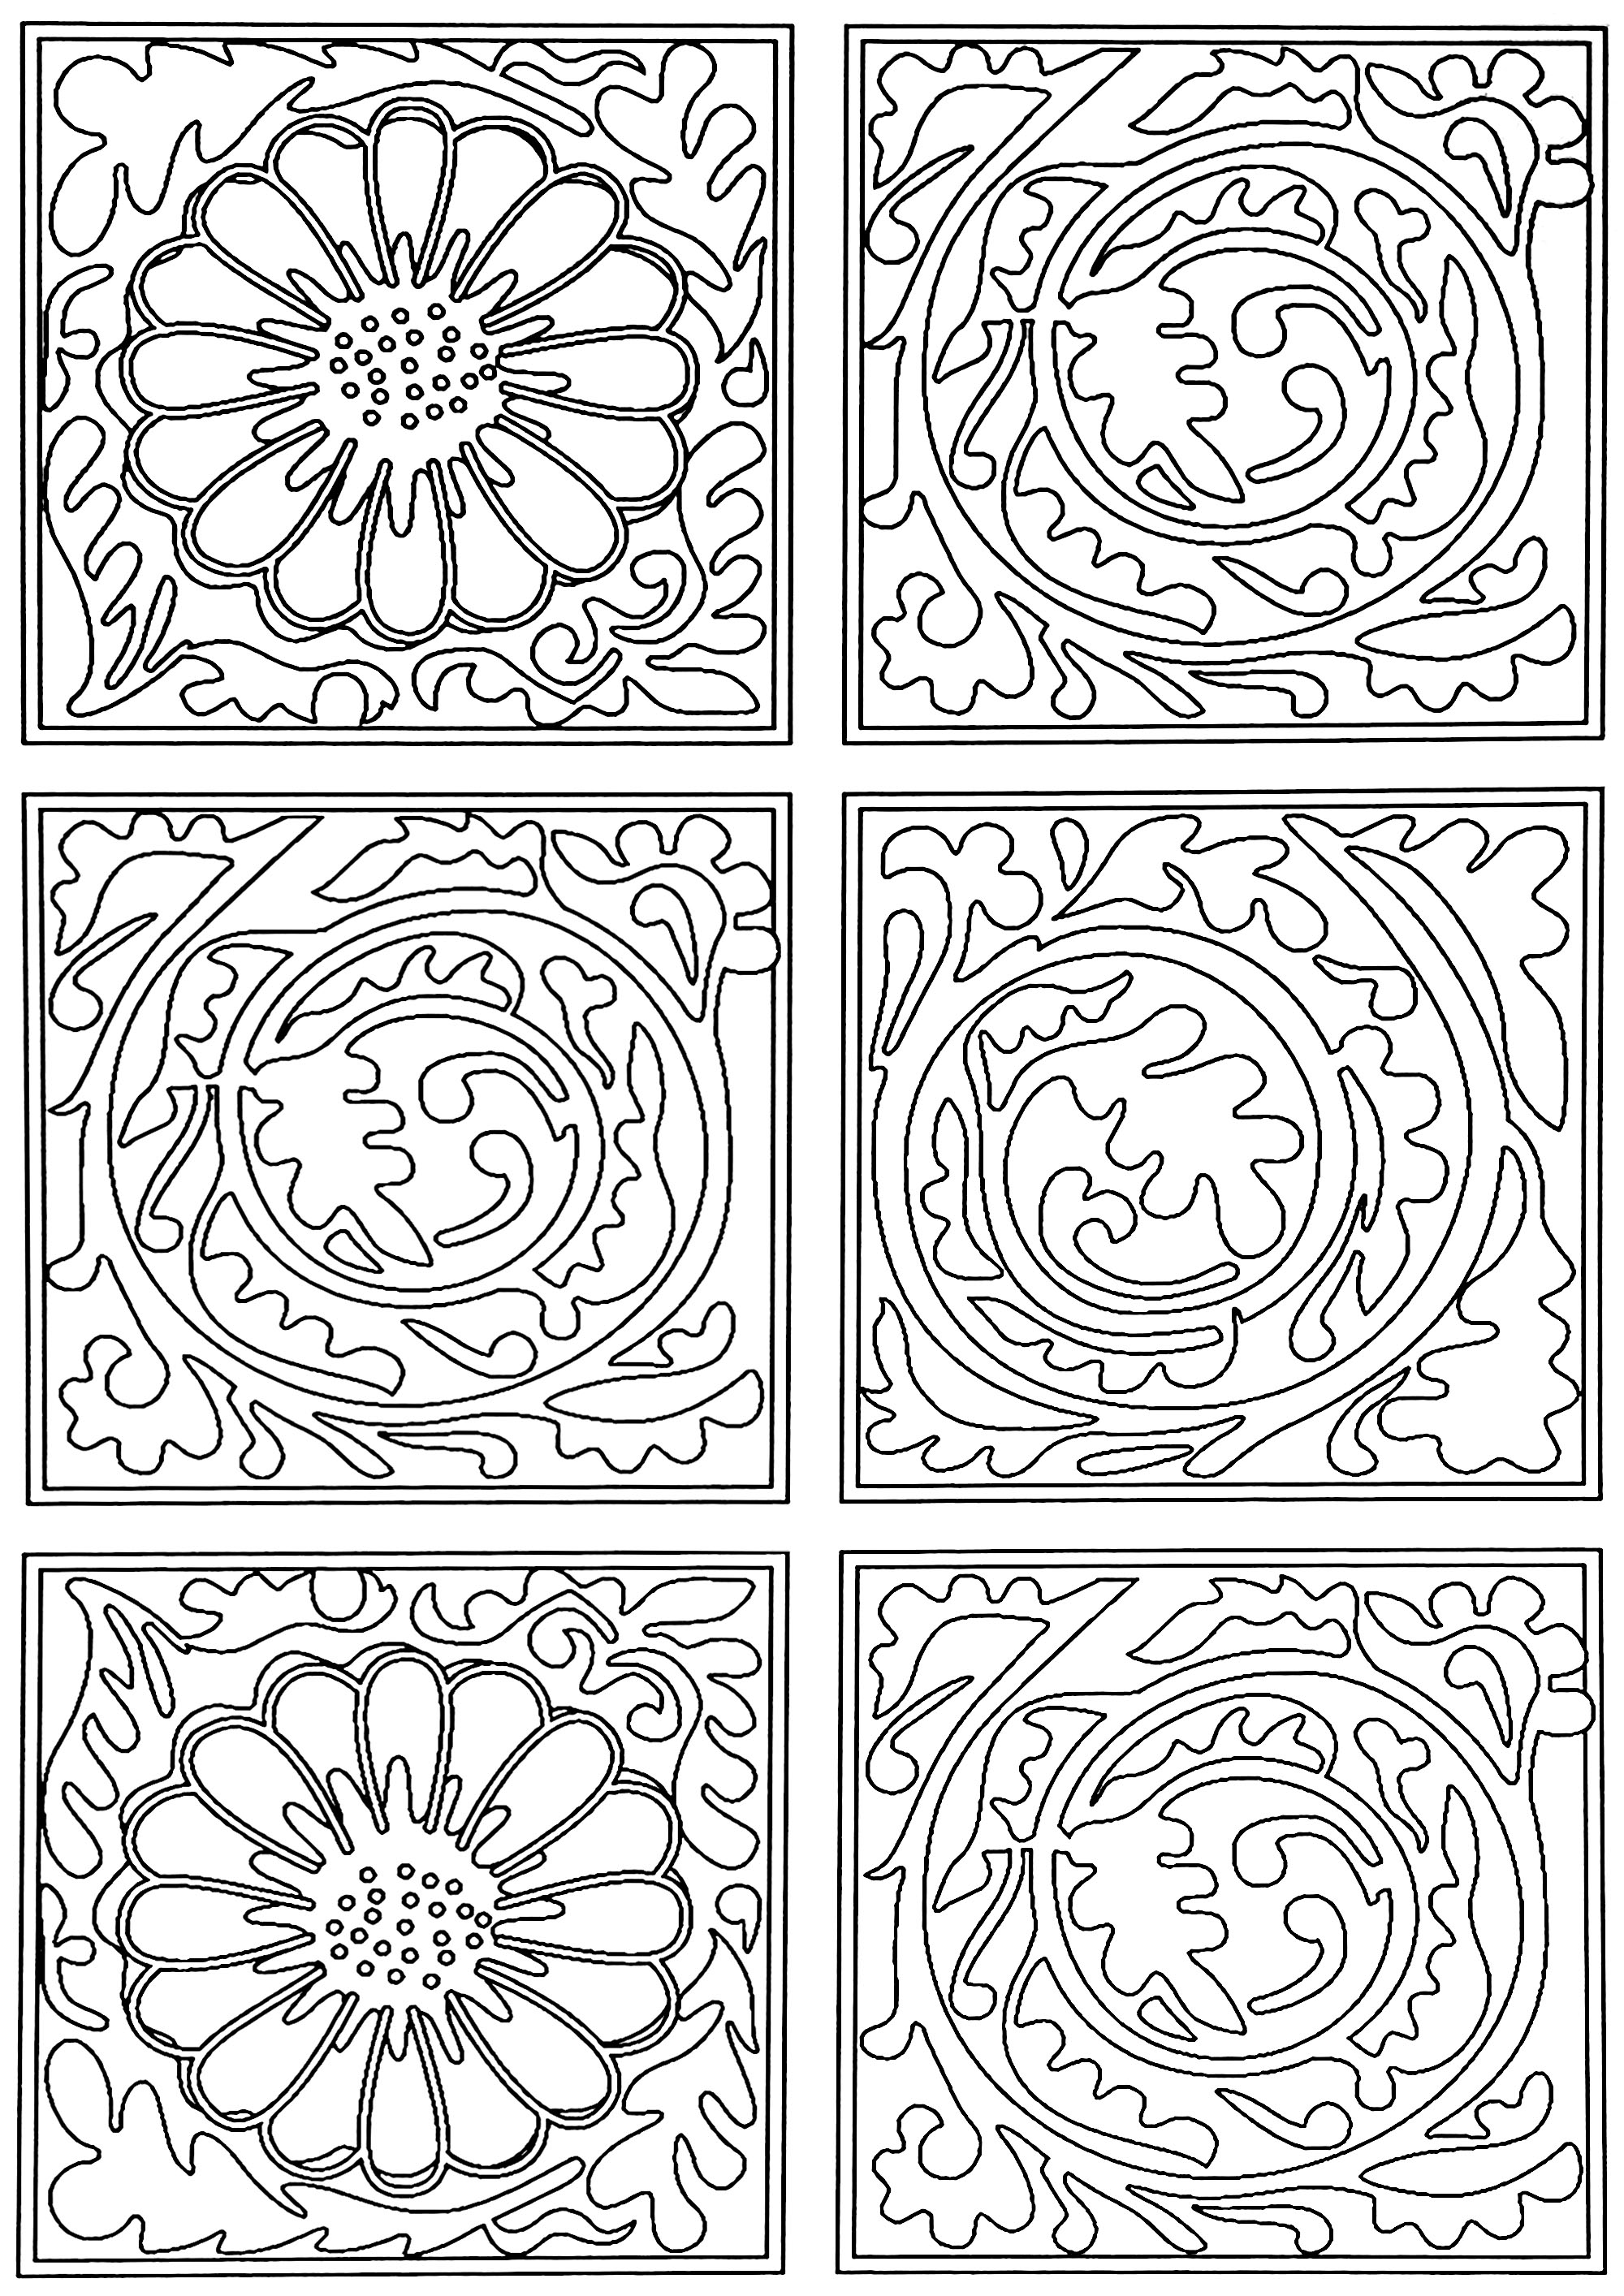 Coloriage créé à partir du motif de papier peint créé par William Morris : 'Diaper' en 1870. Ce motif représente des carrés contenant des enroulements de feuilles, alternant avec de carrés contenant des fleurs.